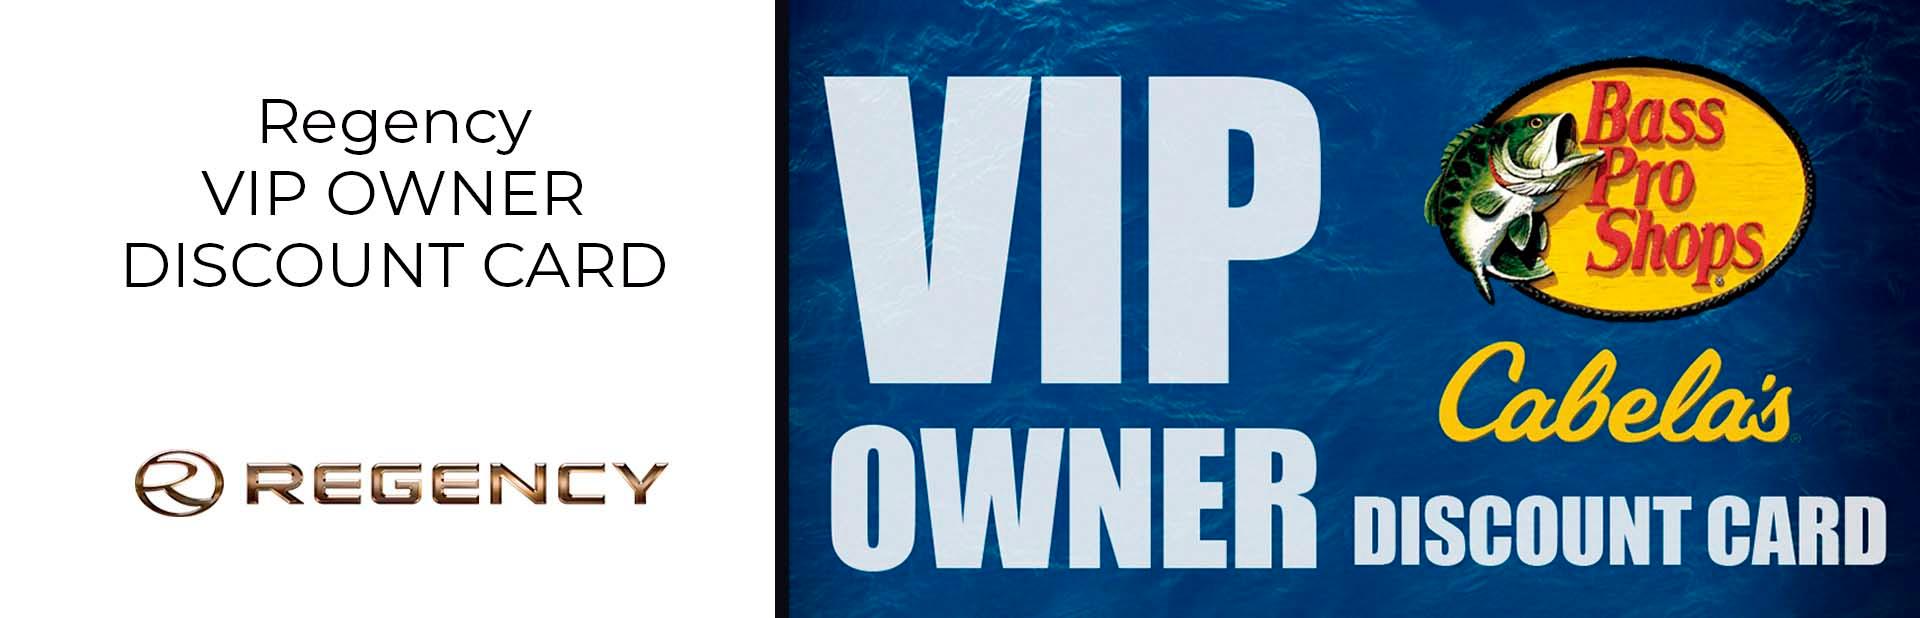 Vip Owner Discount Card Regency